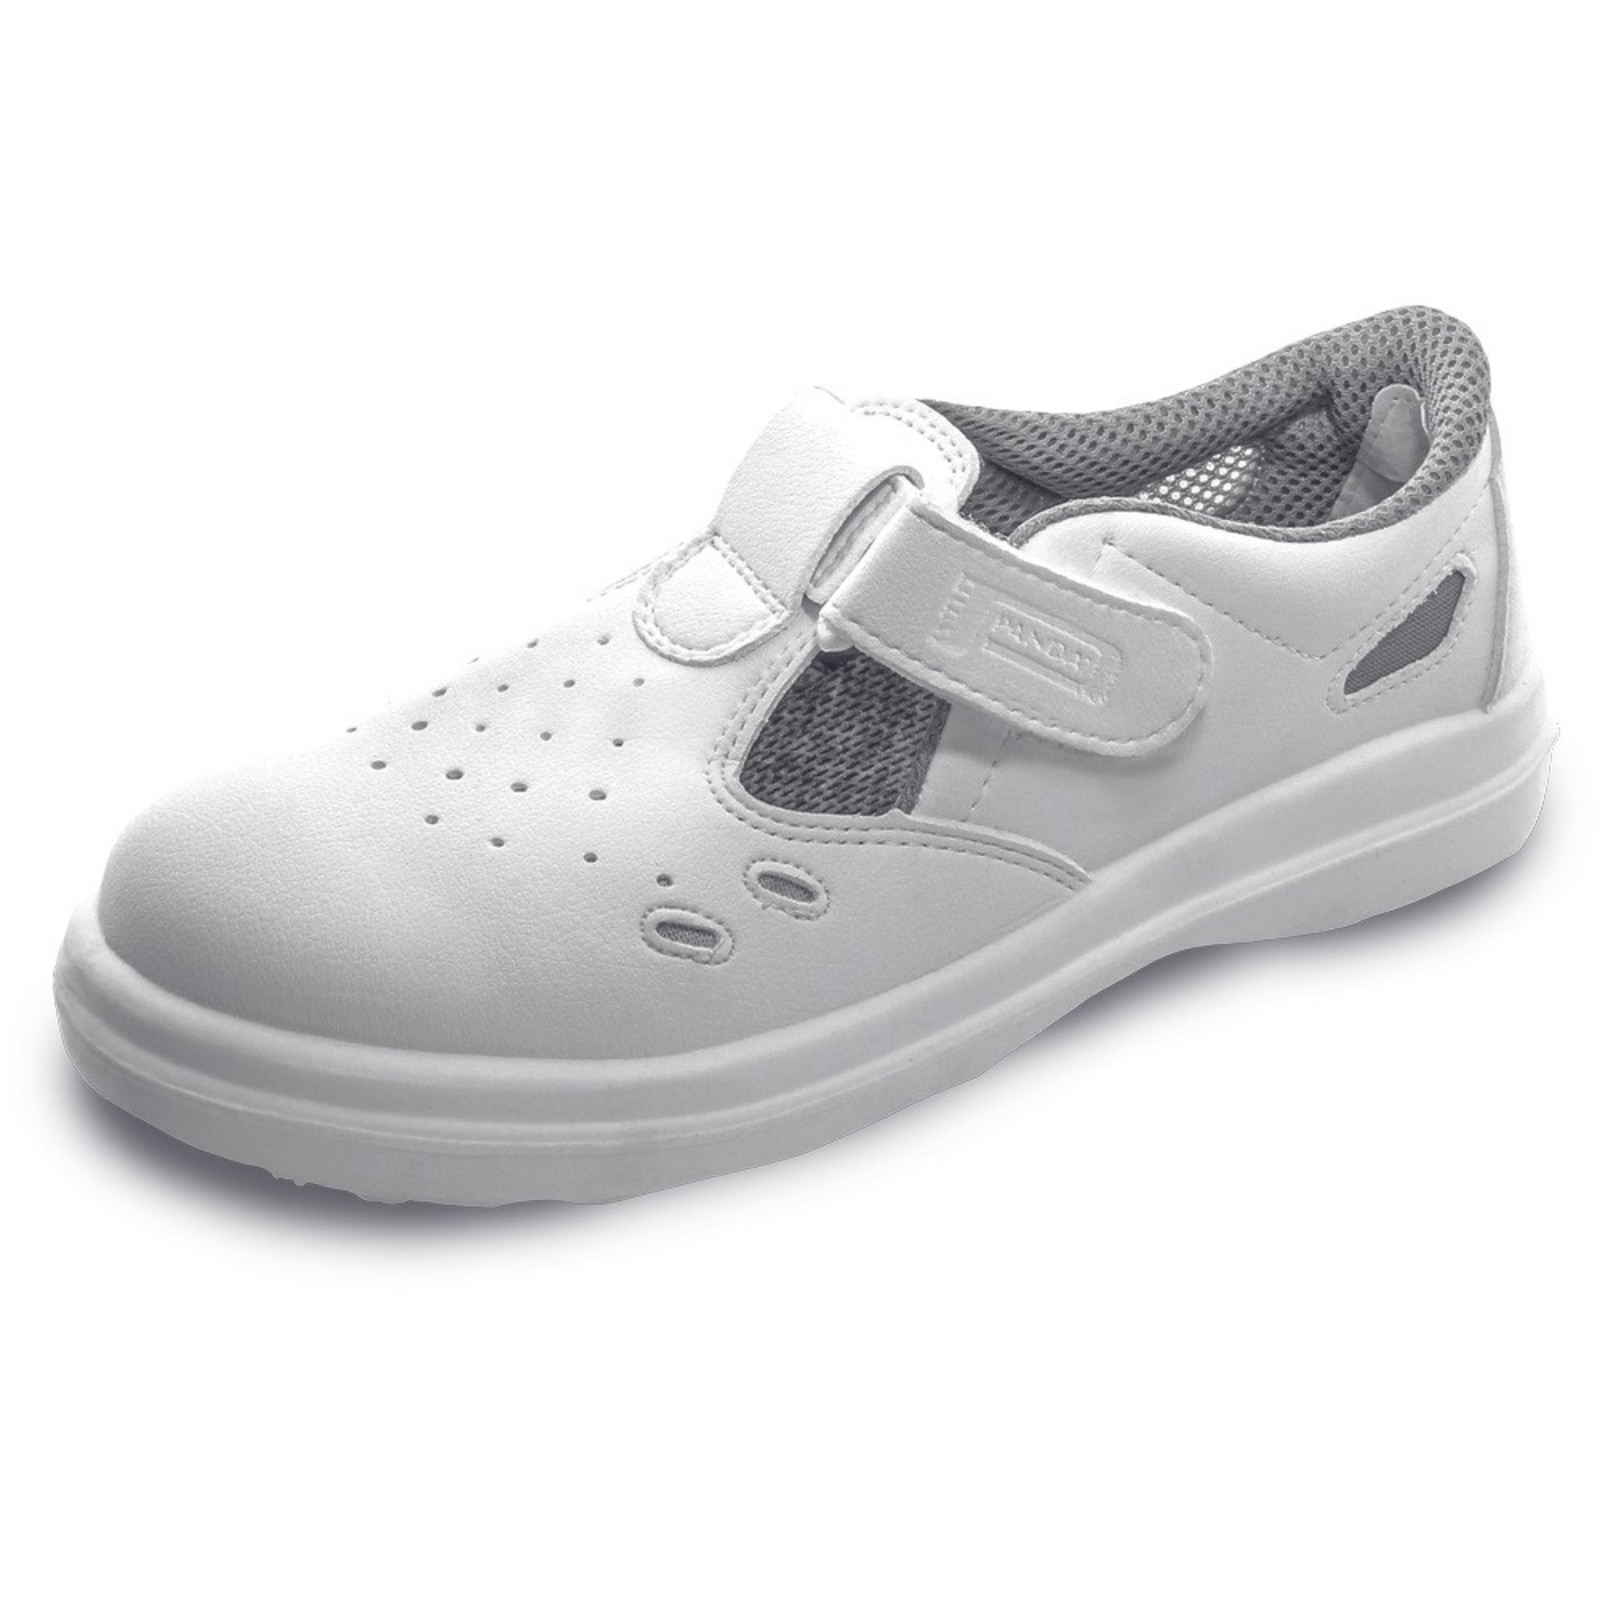 Bezpečnostné sandále Panda Sanitary Lybra S1 SRC - veľkosť: 39, farba: biela